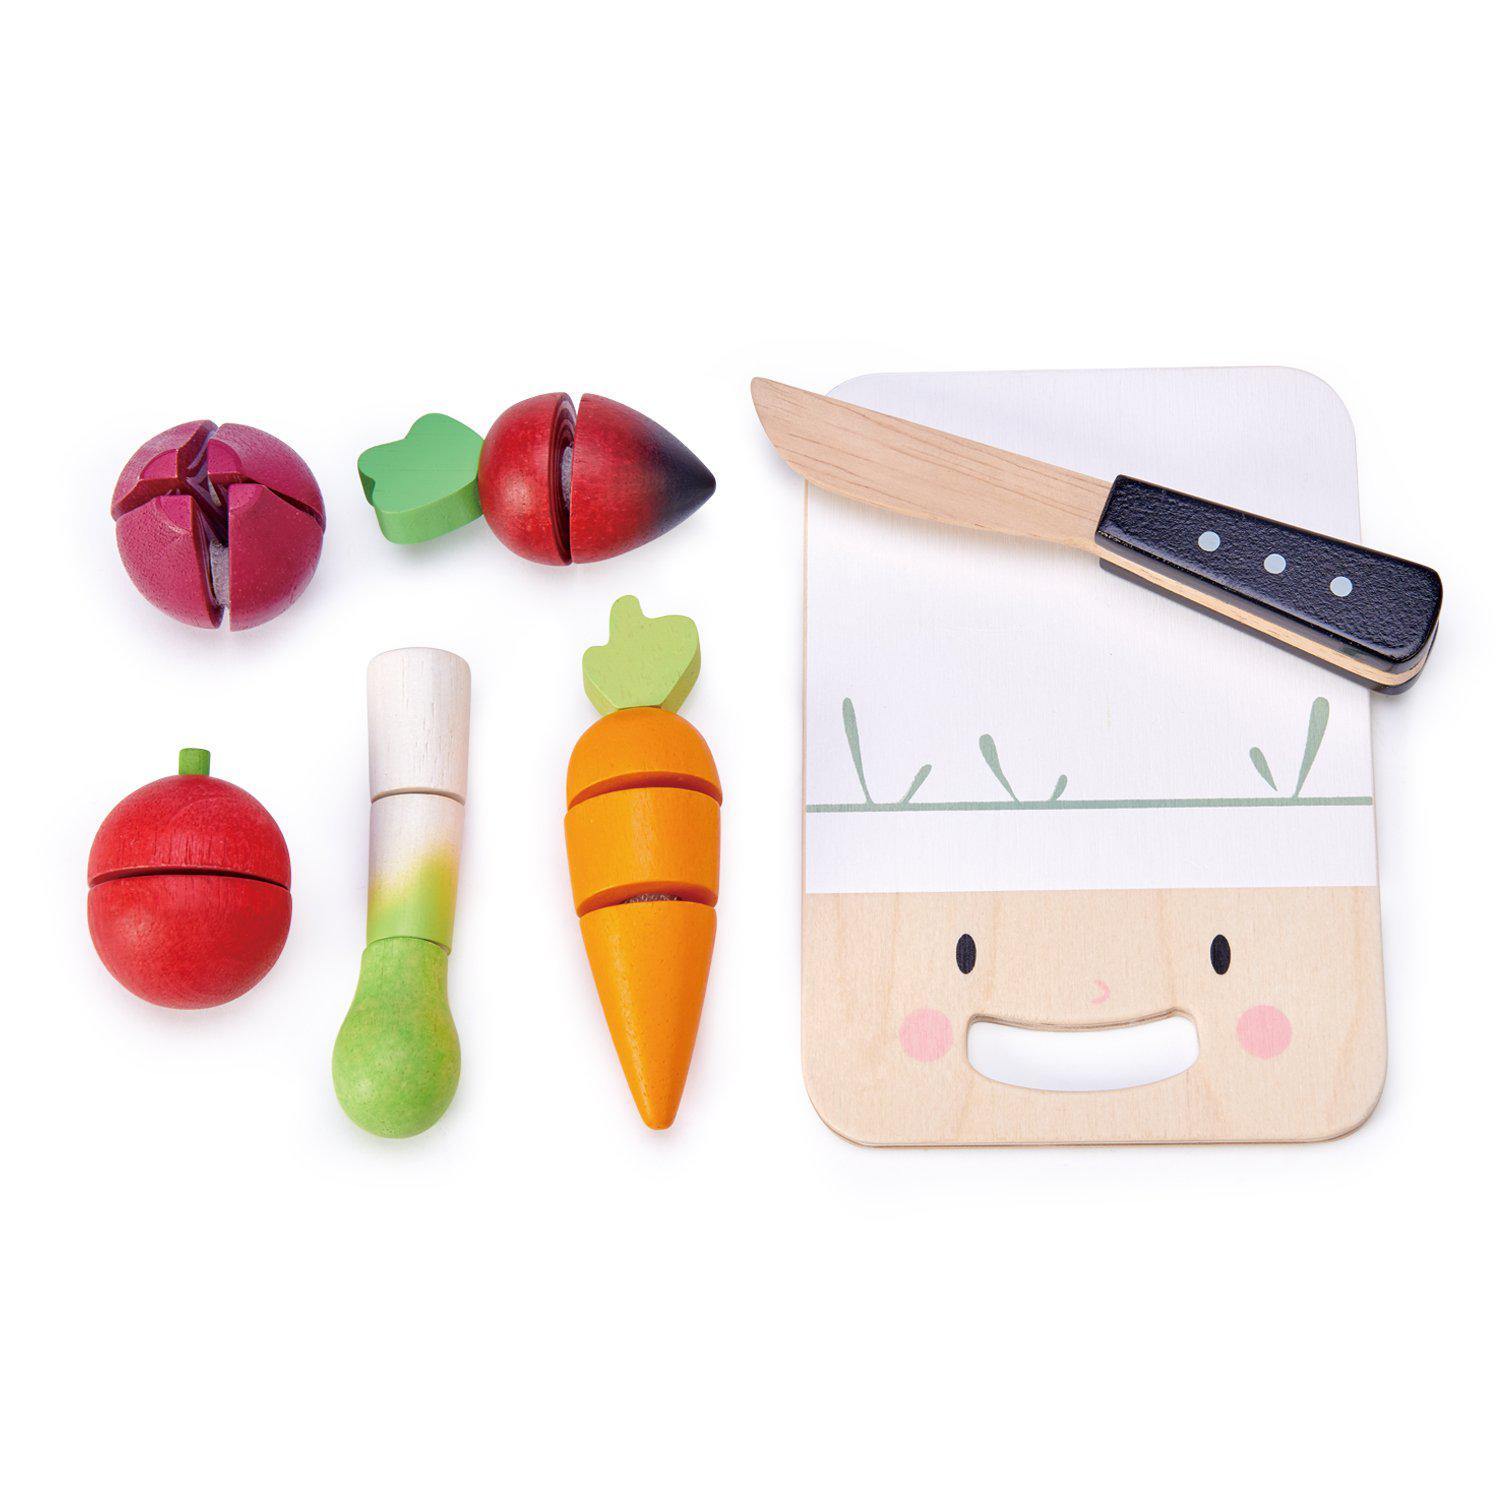 Aprító és zöldség készlet, prémium minőségű fából - Mini Chef Chopping Board - 16 darab - Tender Leaf Toys-Tender Leaf Toys-3-Játszma.ro - A maradandó élmények boltja